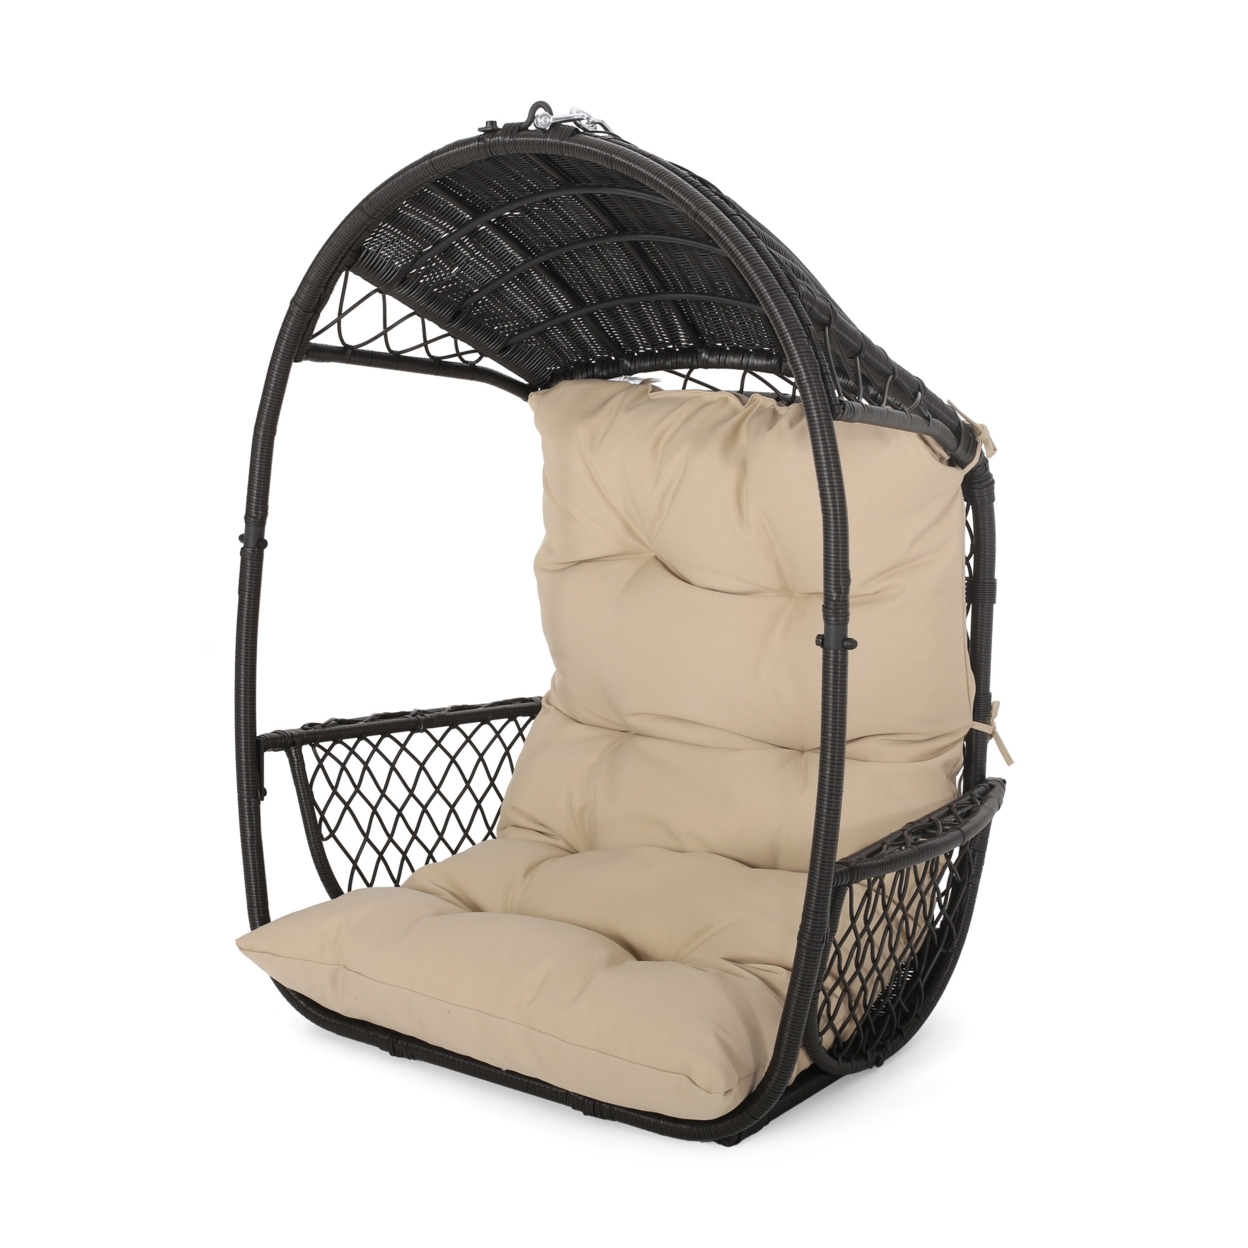 Aydan Outdoor/Indoor Wicker Basket Hanging Chair (NO STAND) - Brown/tan